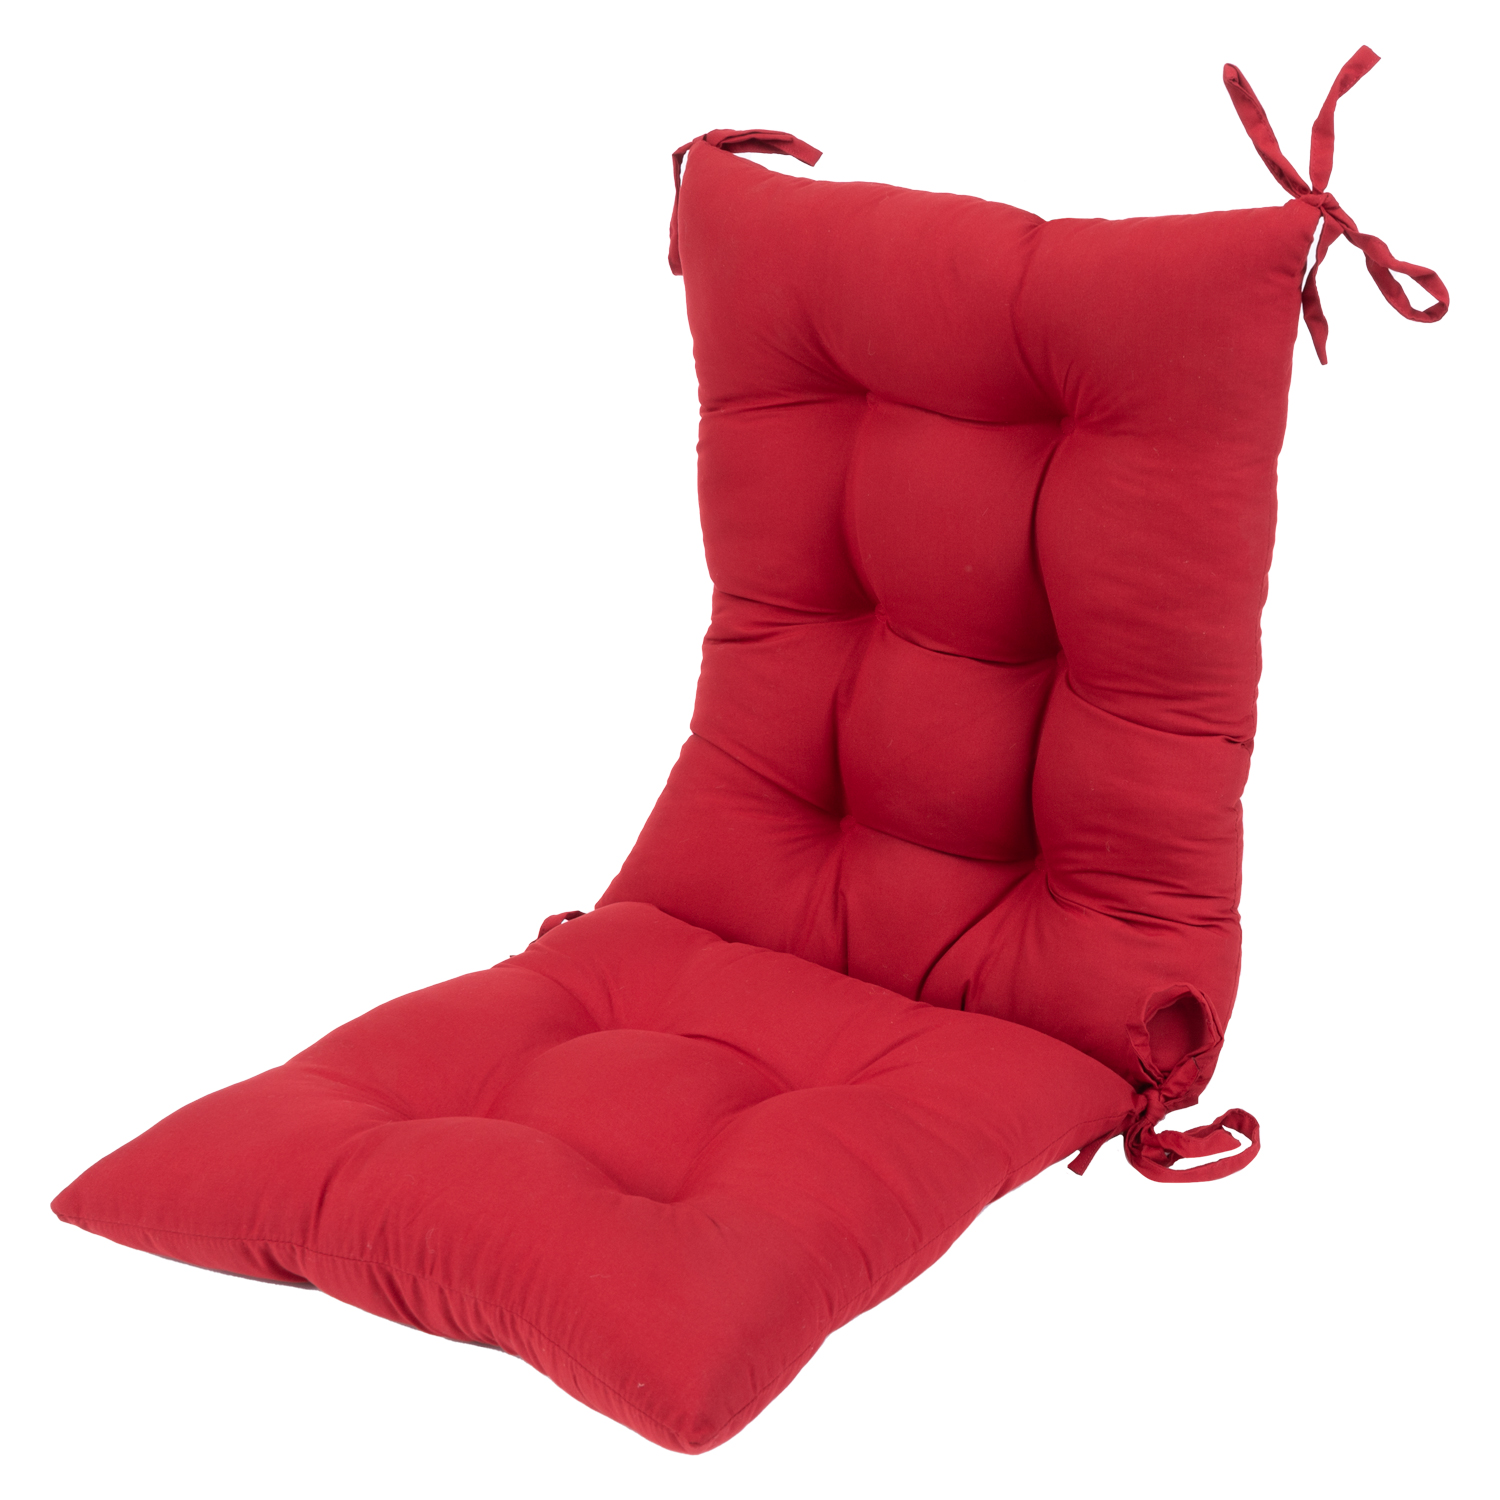 Coussins de chaise berçante à dossier haut - Rouge. Colour: red, Fr